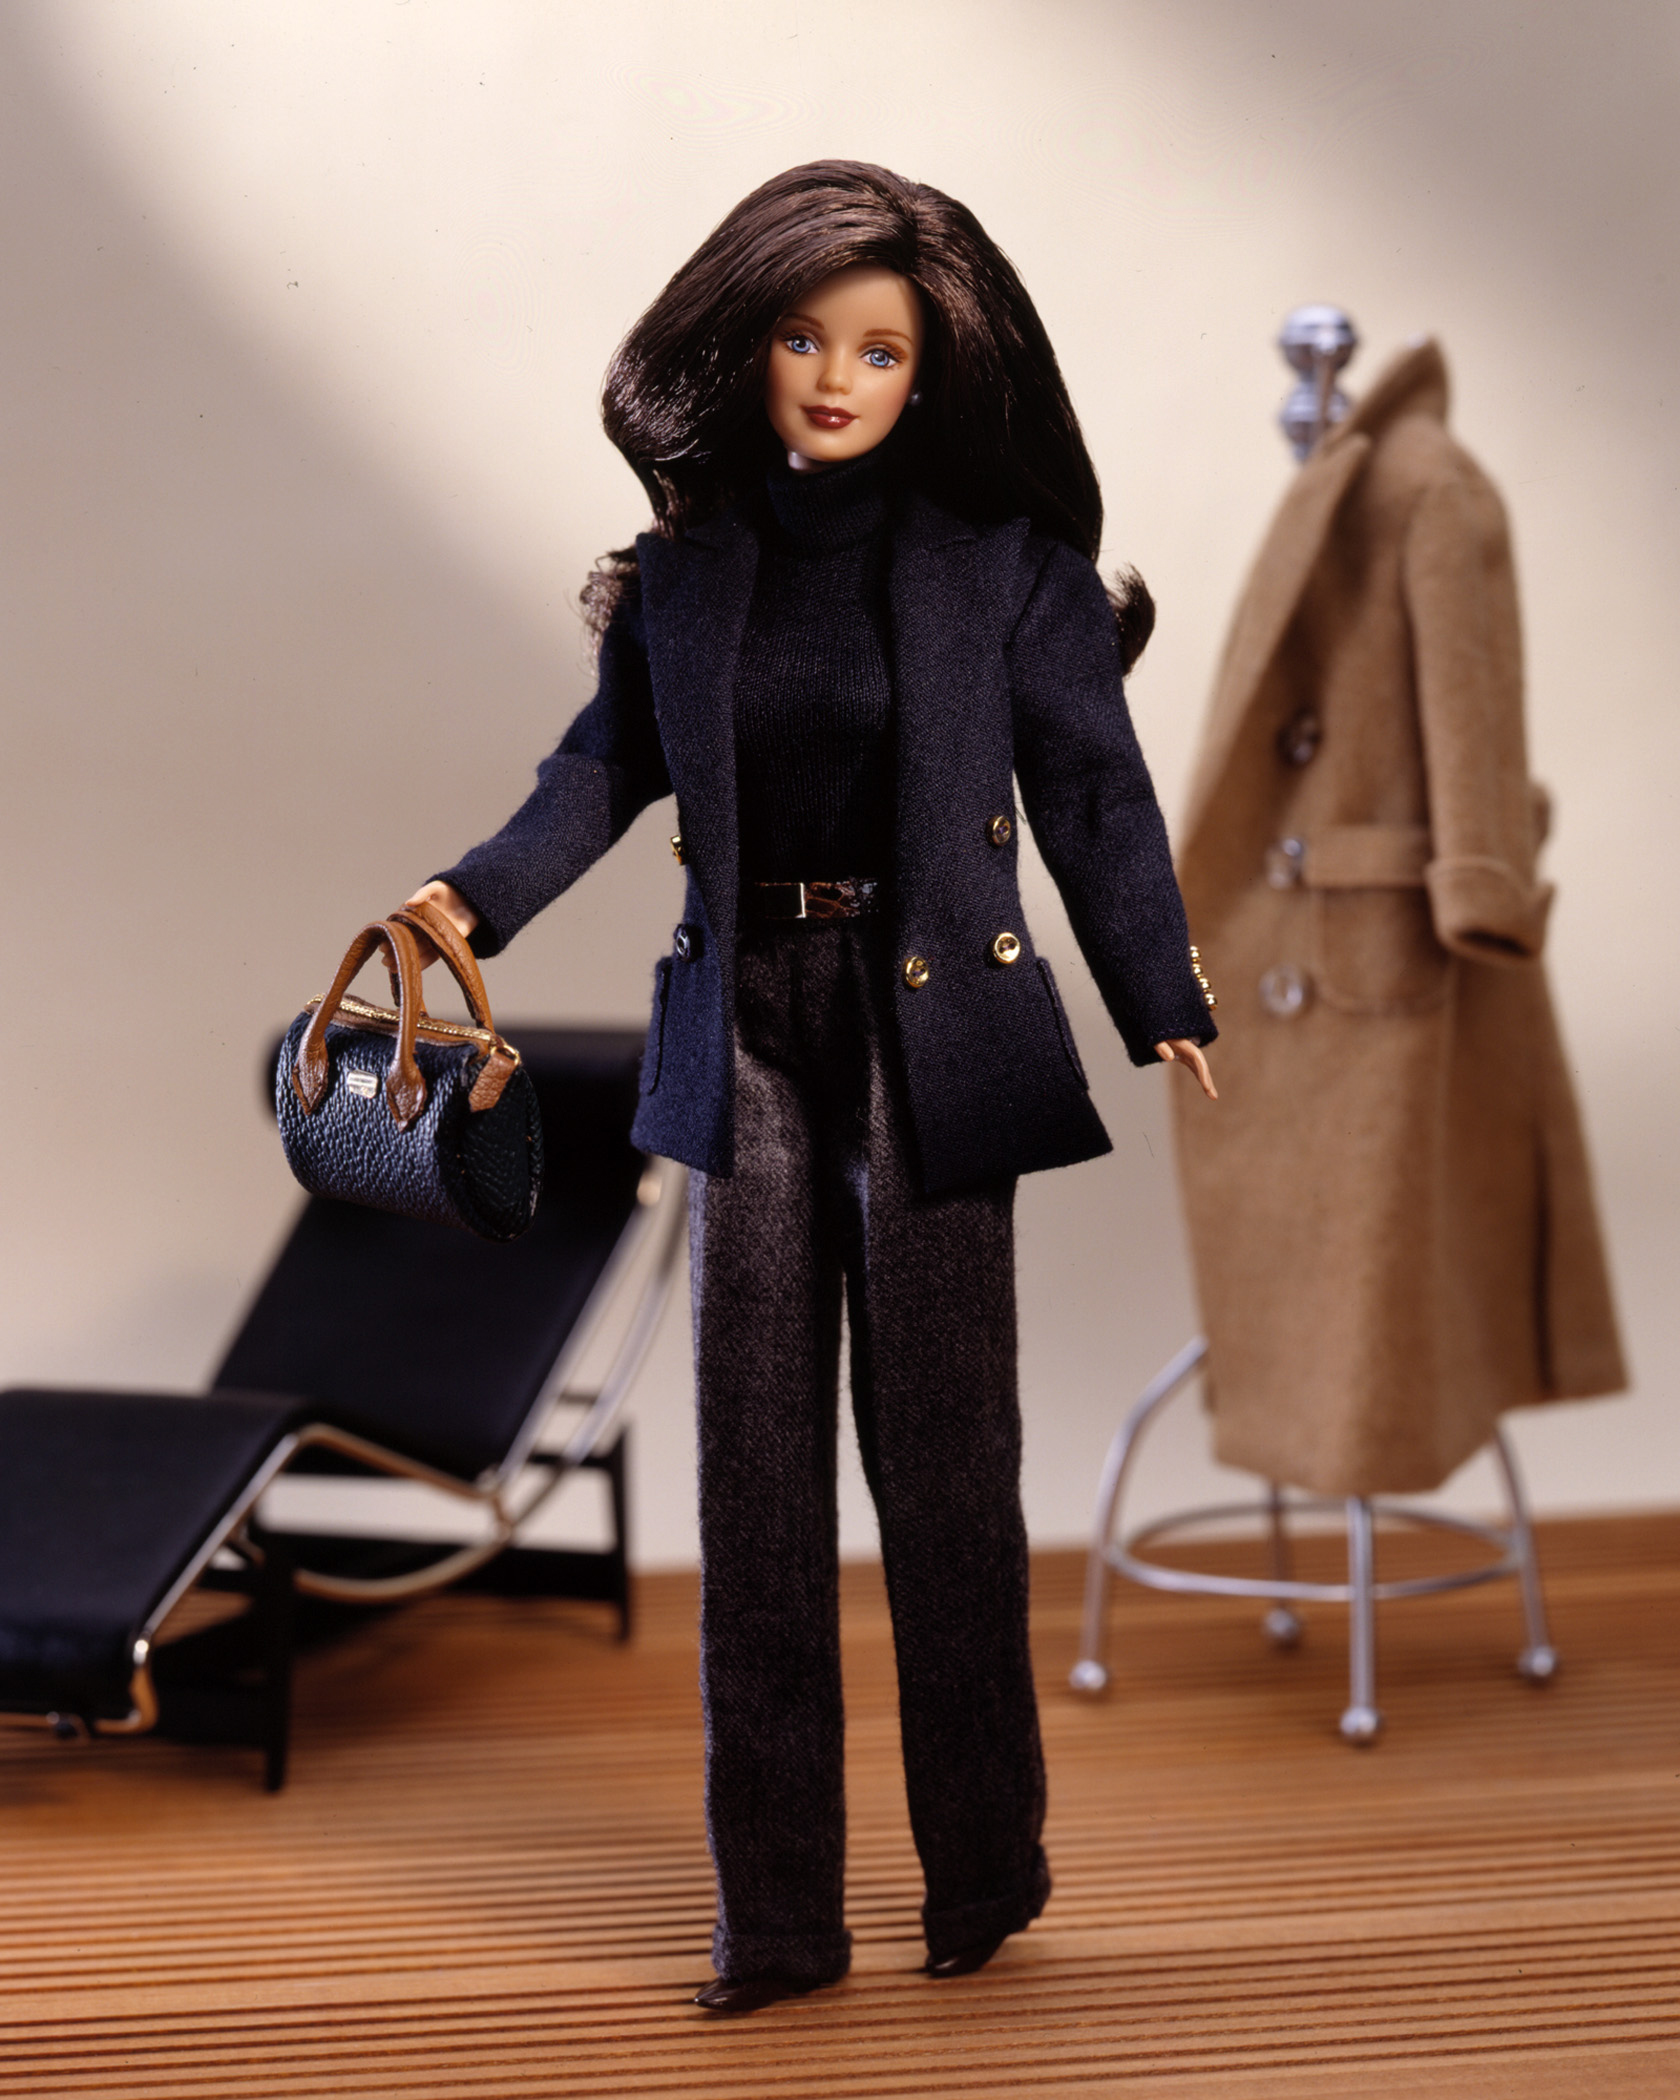 The Ralph Lauren Barbie Doll released in 1996.